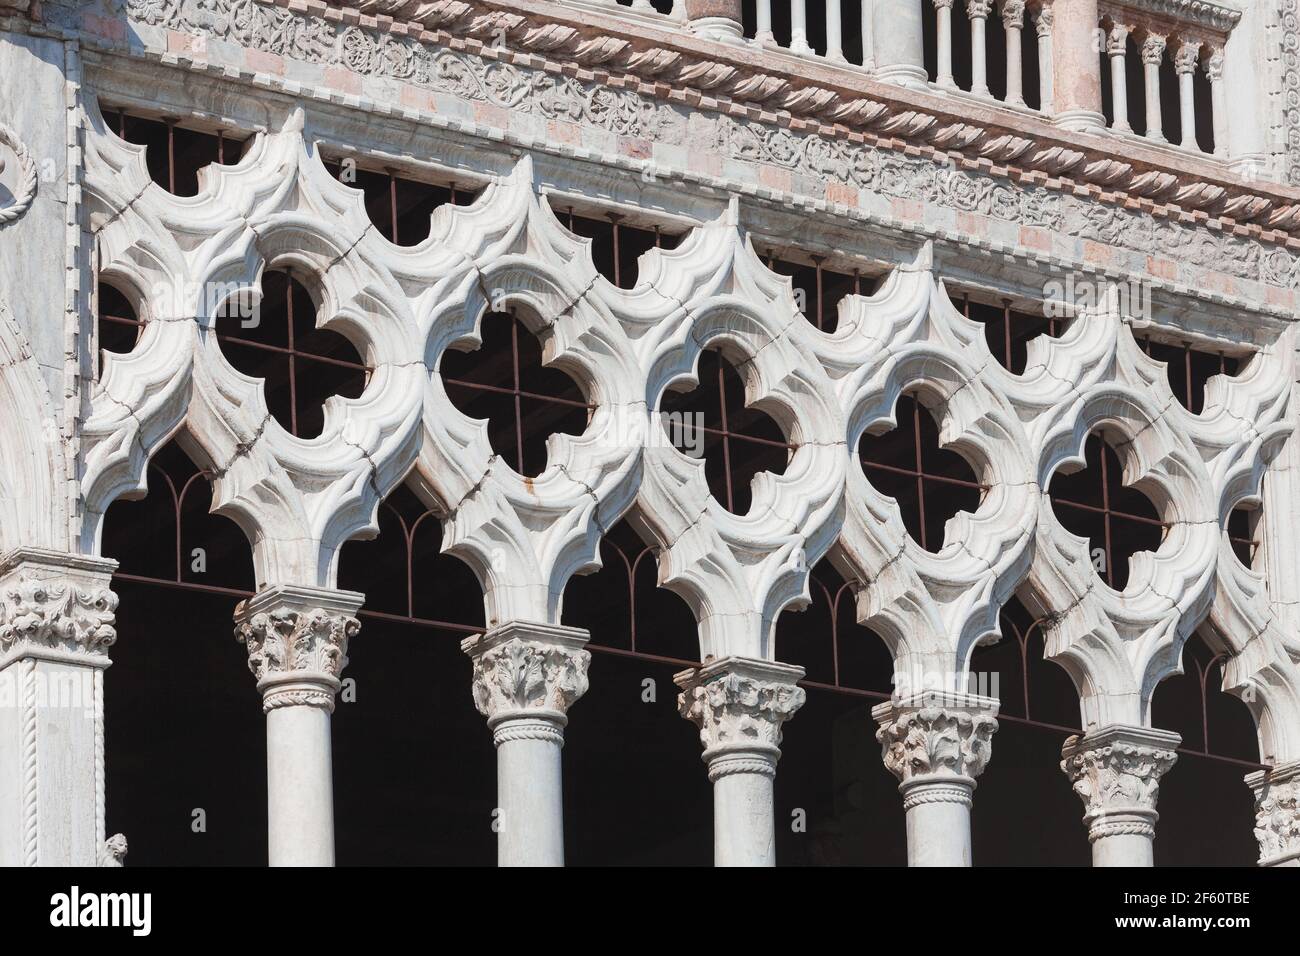 Nahaufnahme der gotischen Architektur in Venedig mit traditionellen Steinbögen aus Trefoil und Quatrefoil-Fenstern. Fassade des Ca d Oro Palastes am Canal Grande. Stockfoto